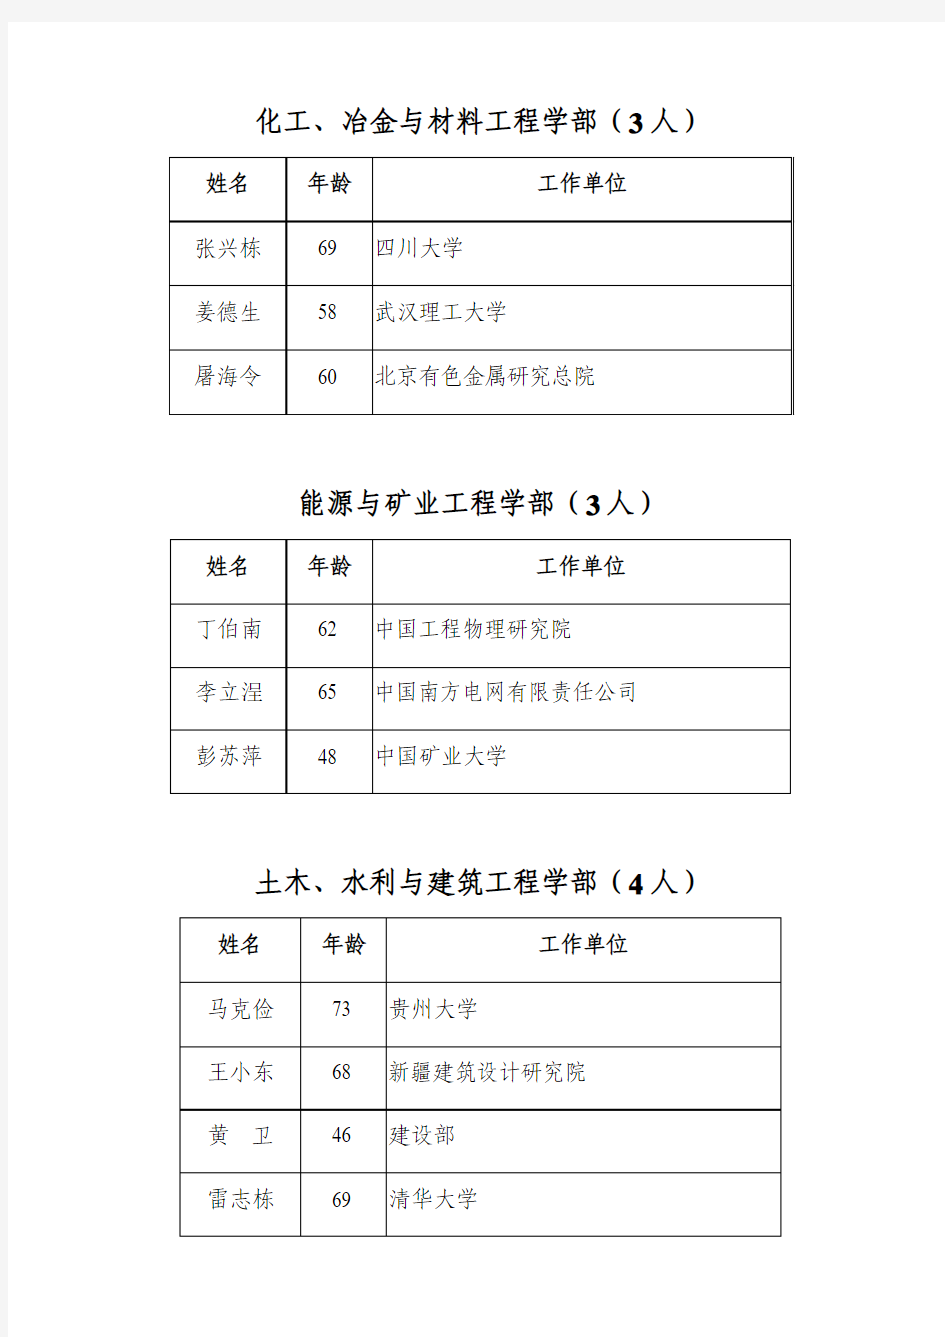 中国工程院2007年当选院士名单